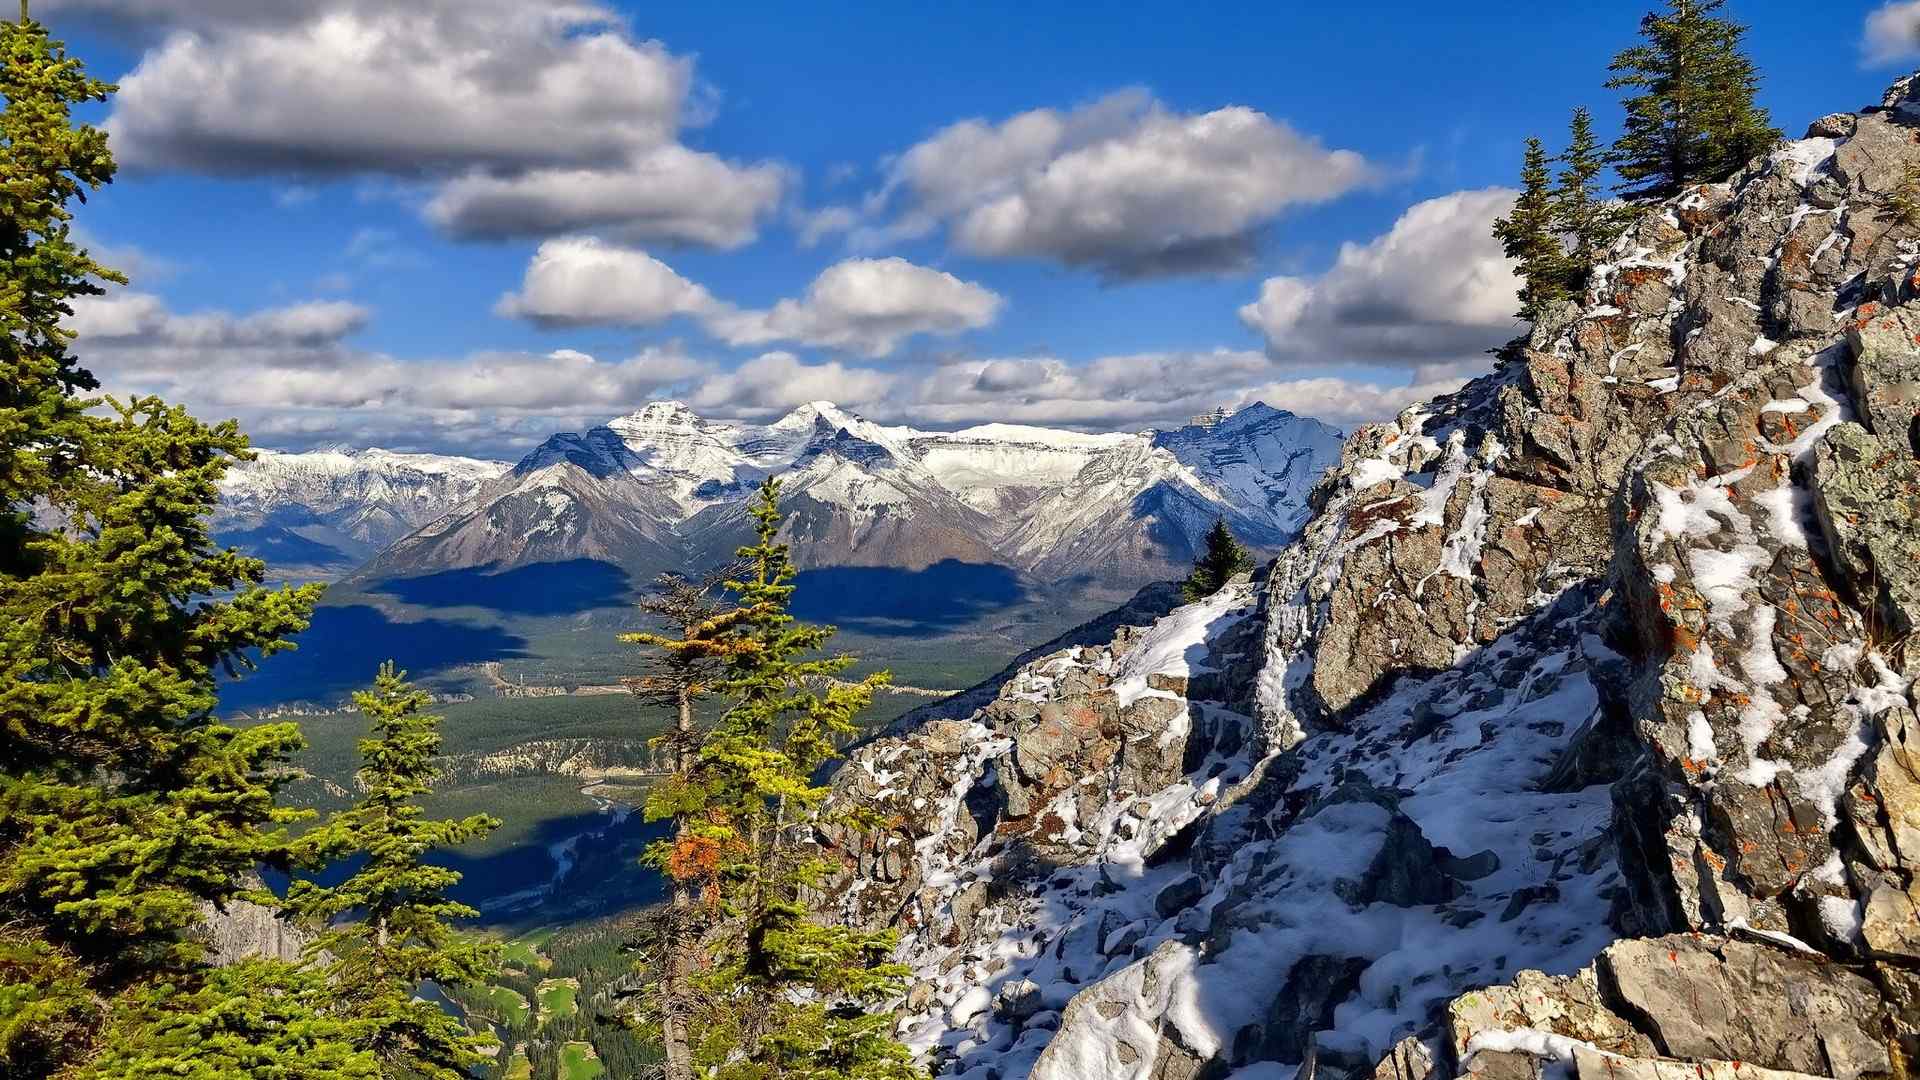 洛基山脉腹雪冰峰_加拿大最美的班夫胜景壁纸_第八辑